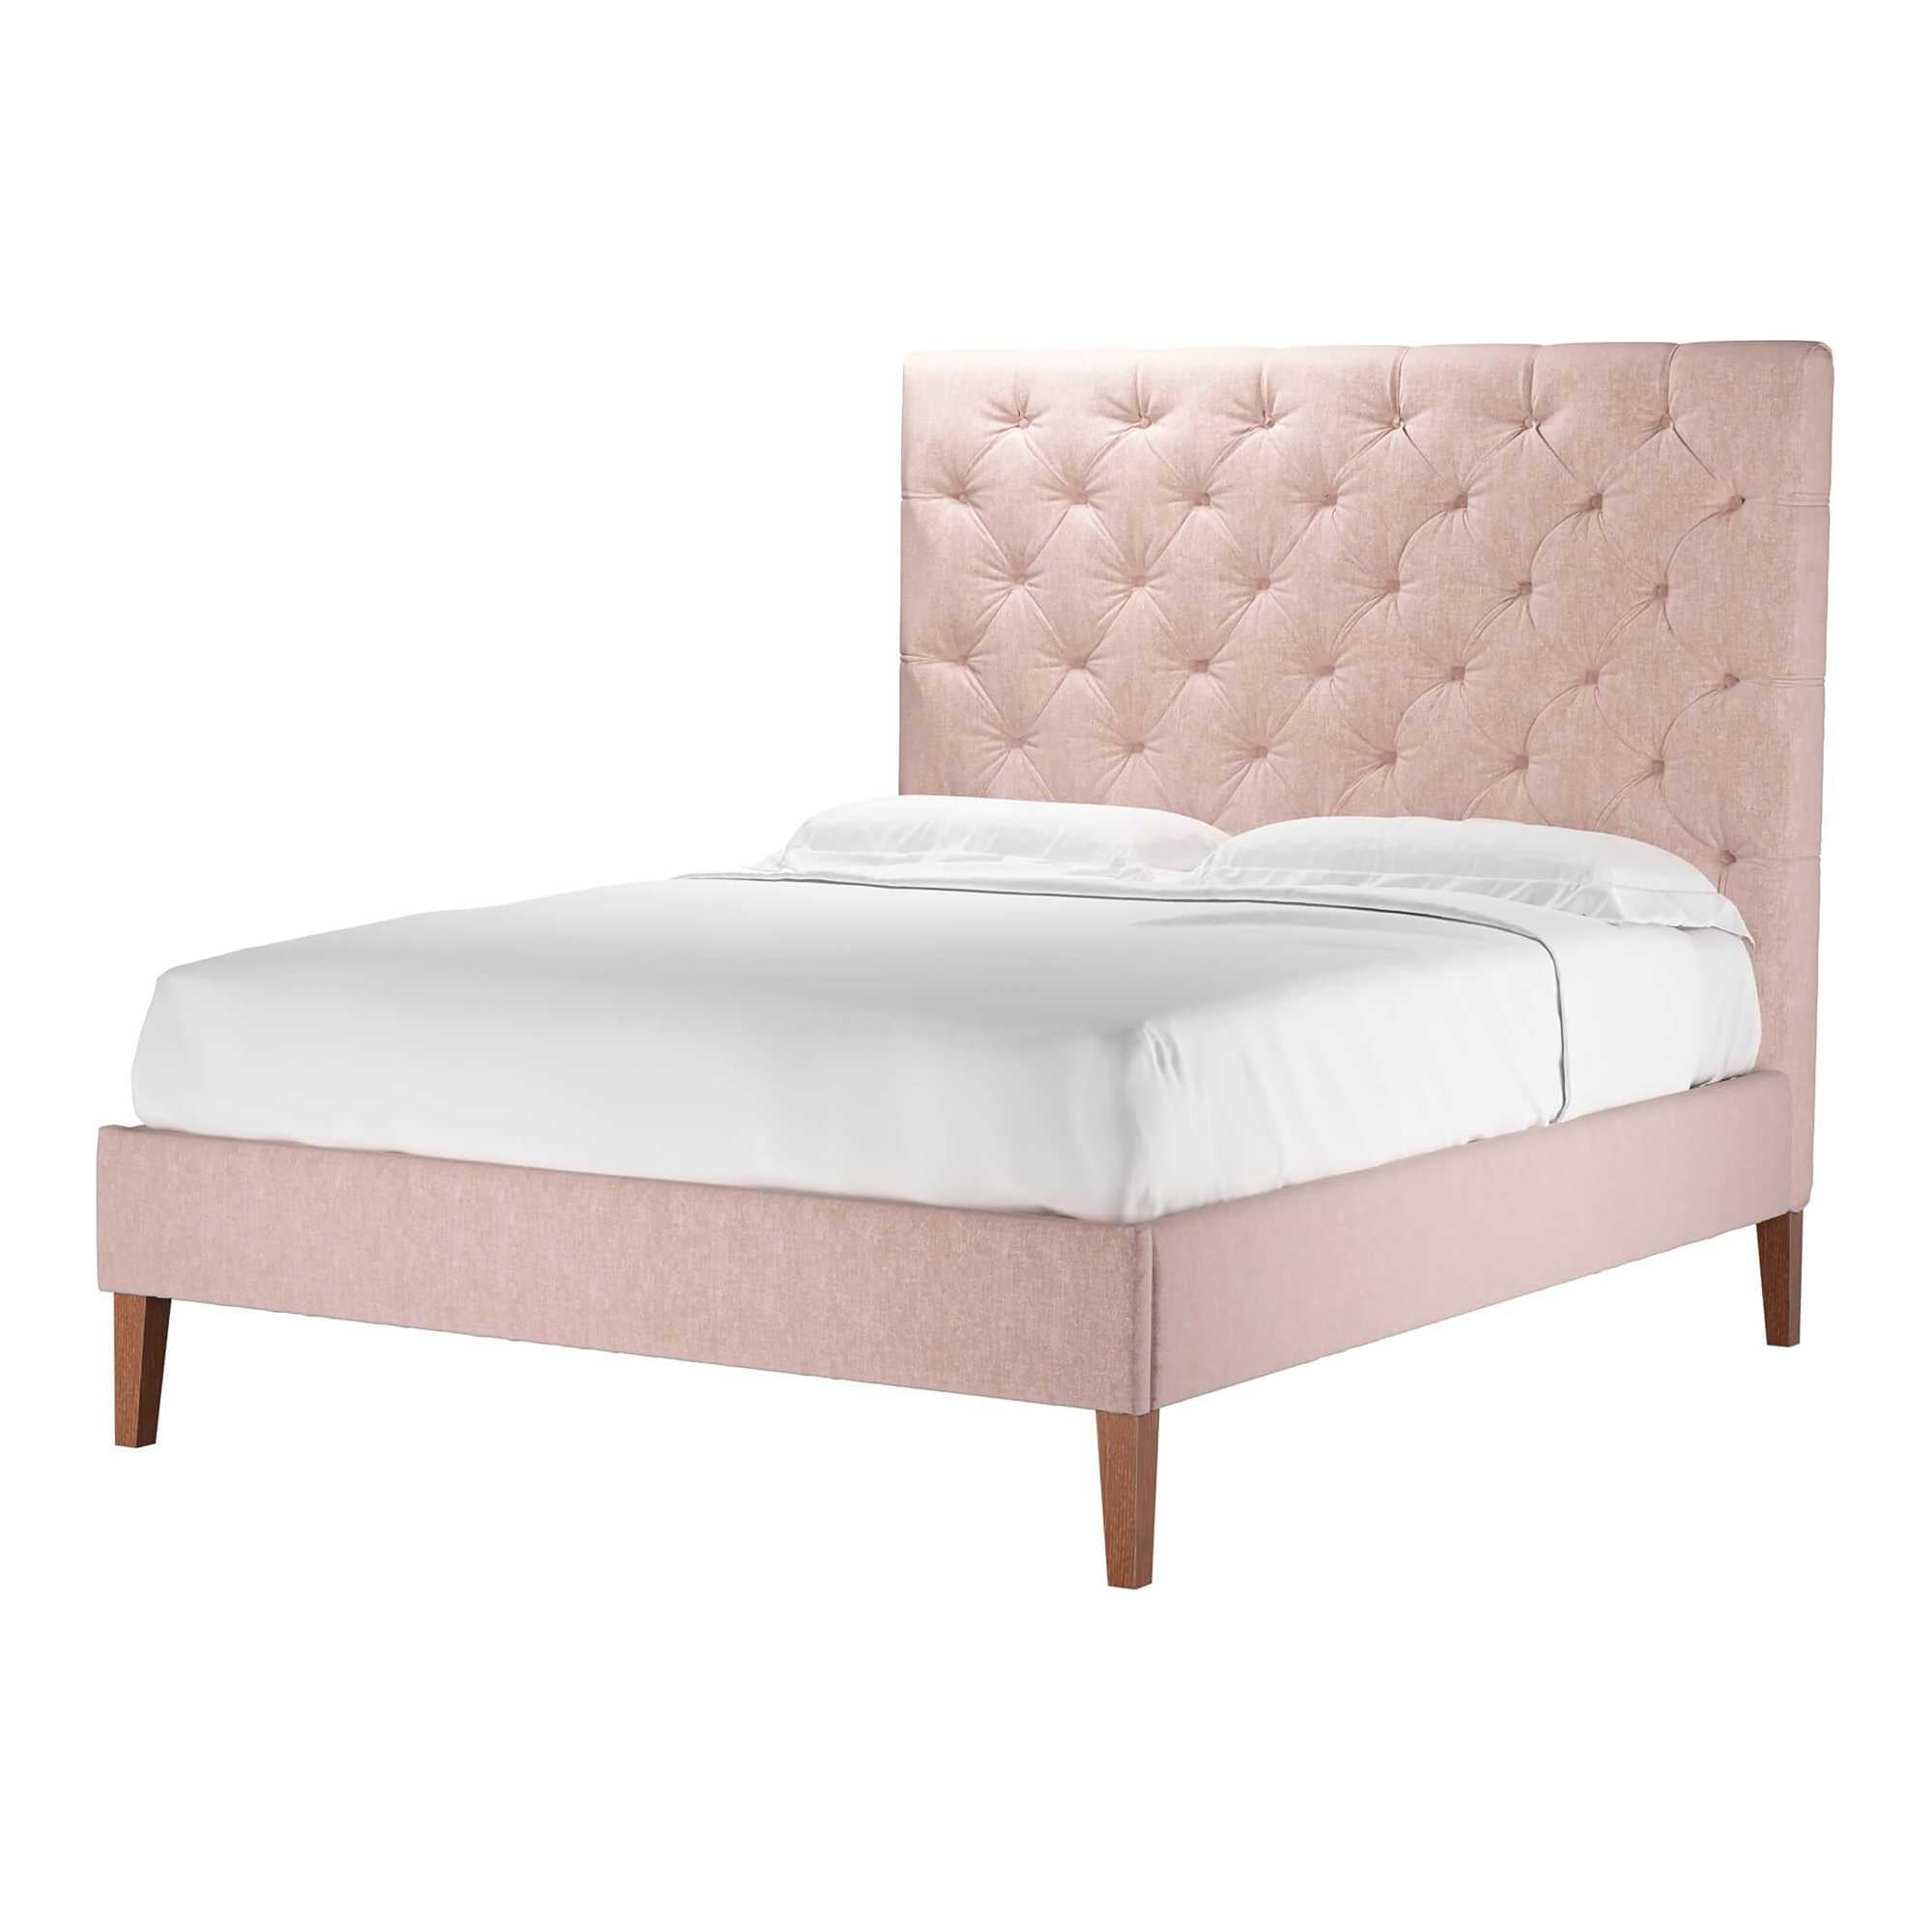 Rosalie Pavilion Pink Brushstroke Bed - King Size